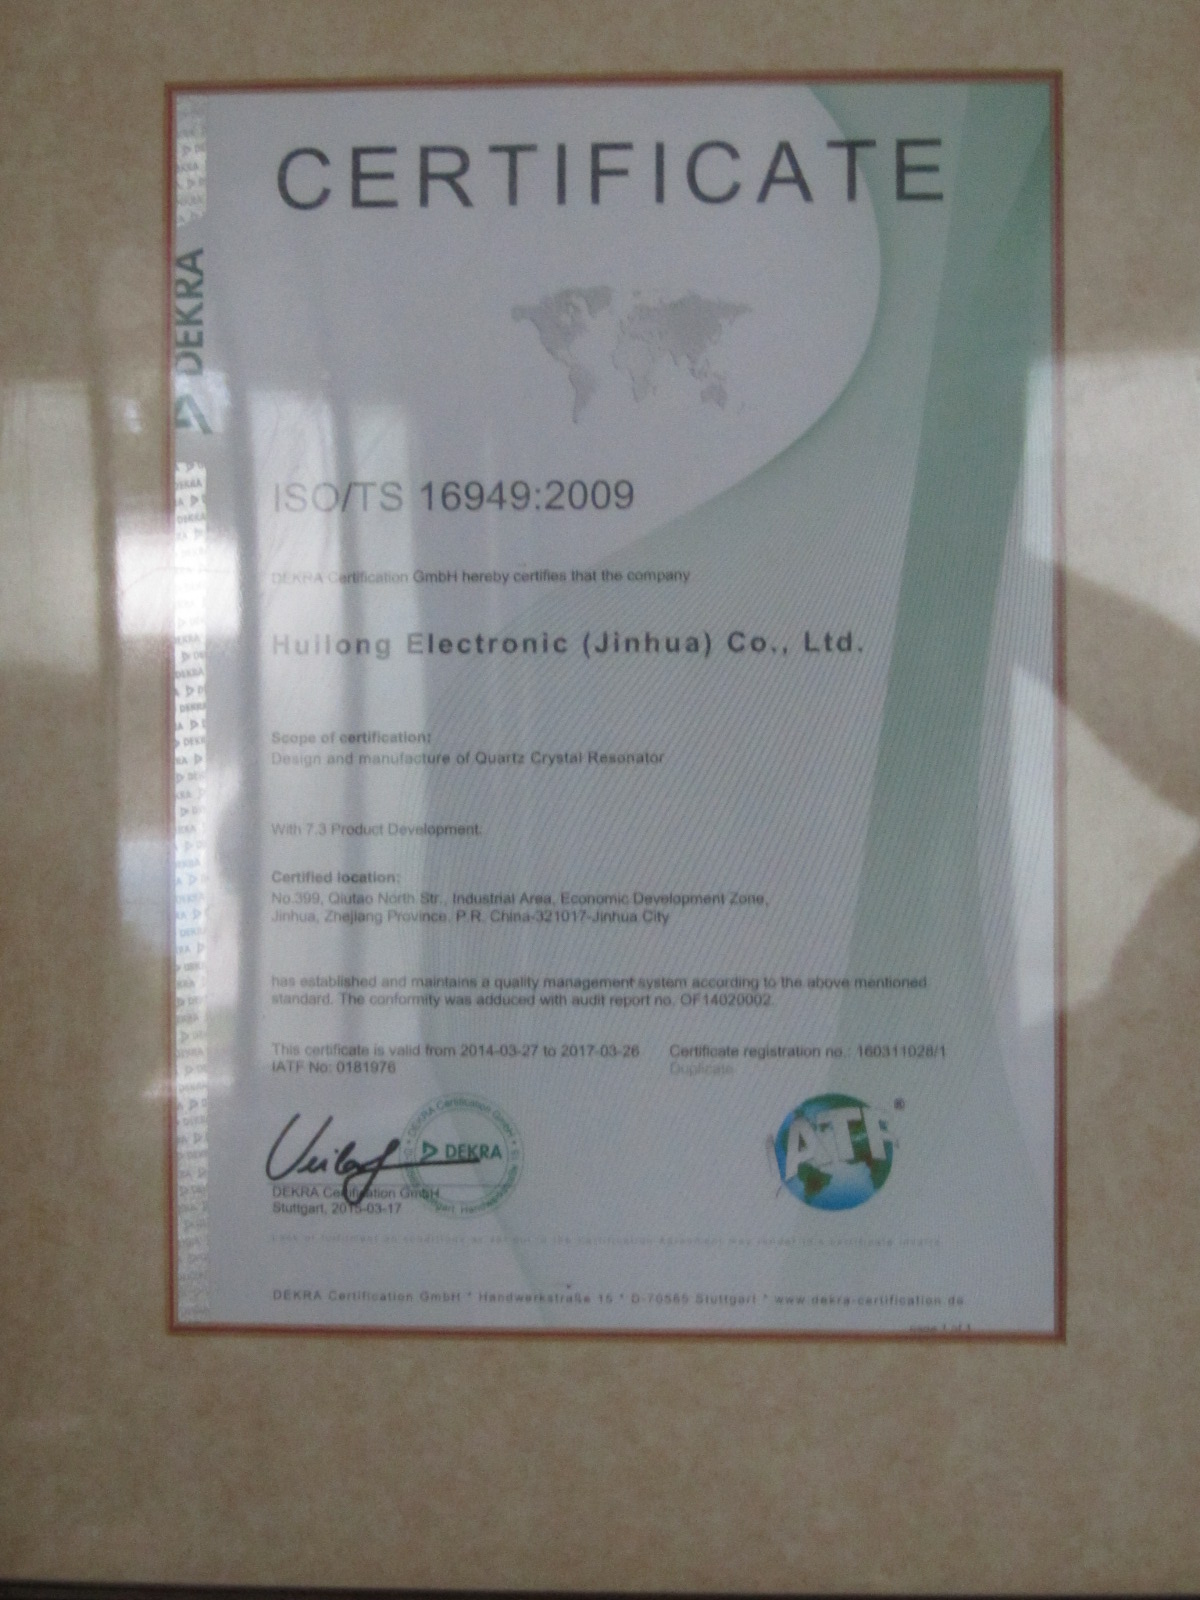 ISO/TS 16949:2009證書